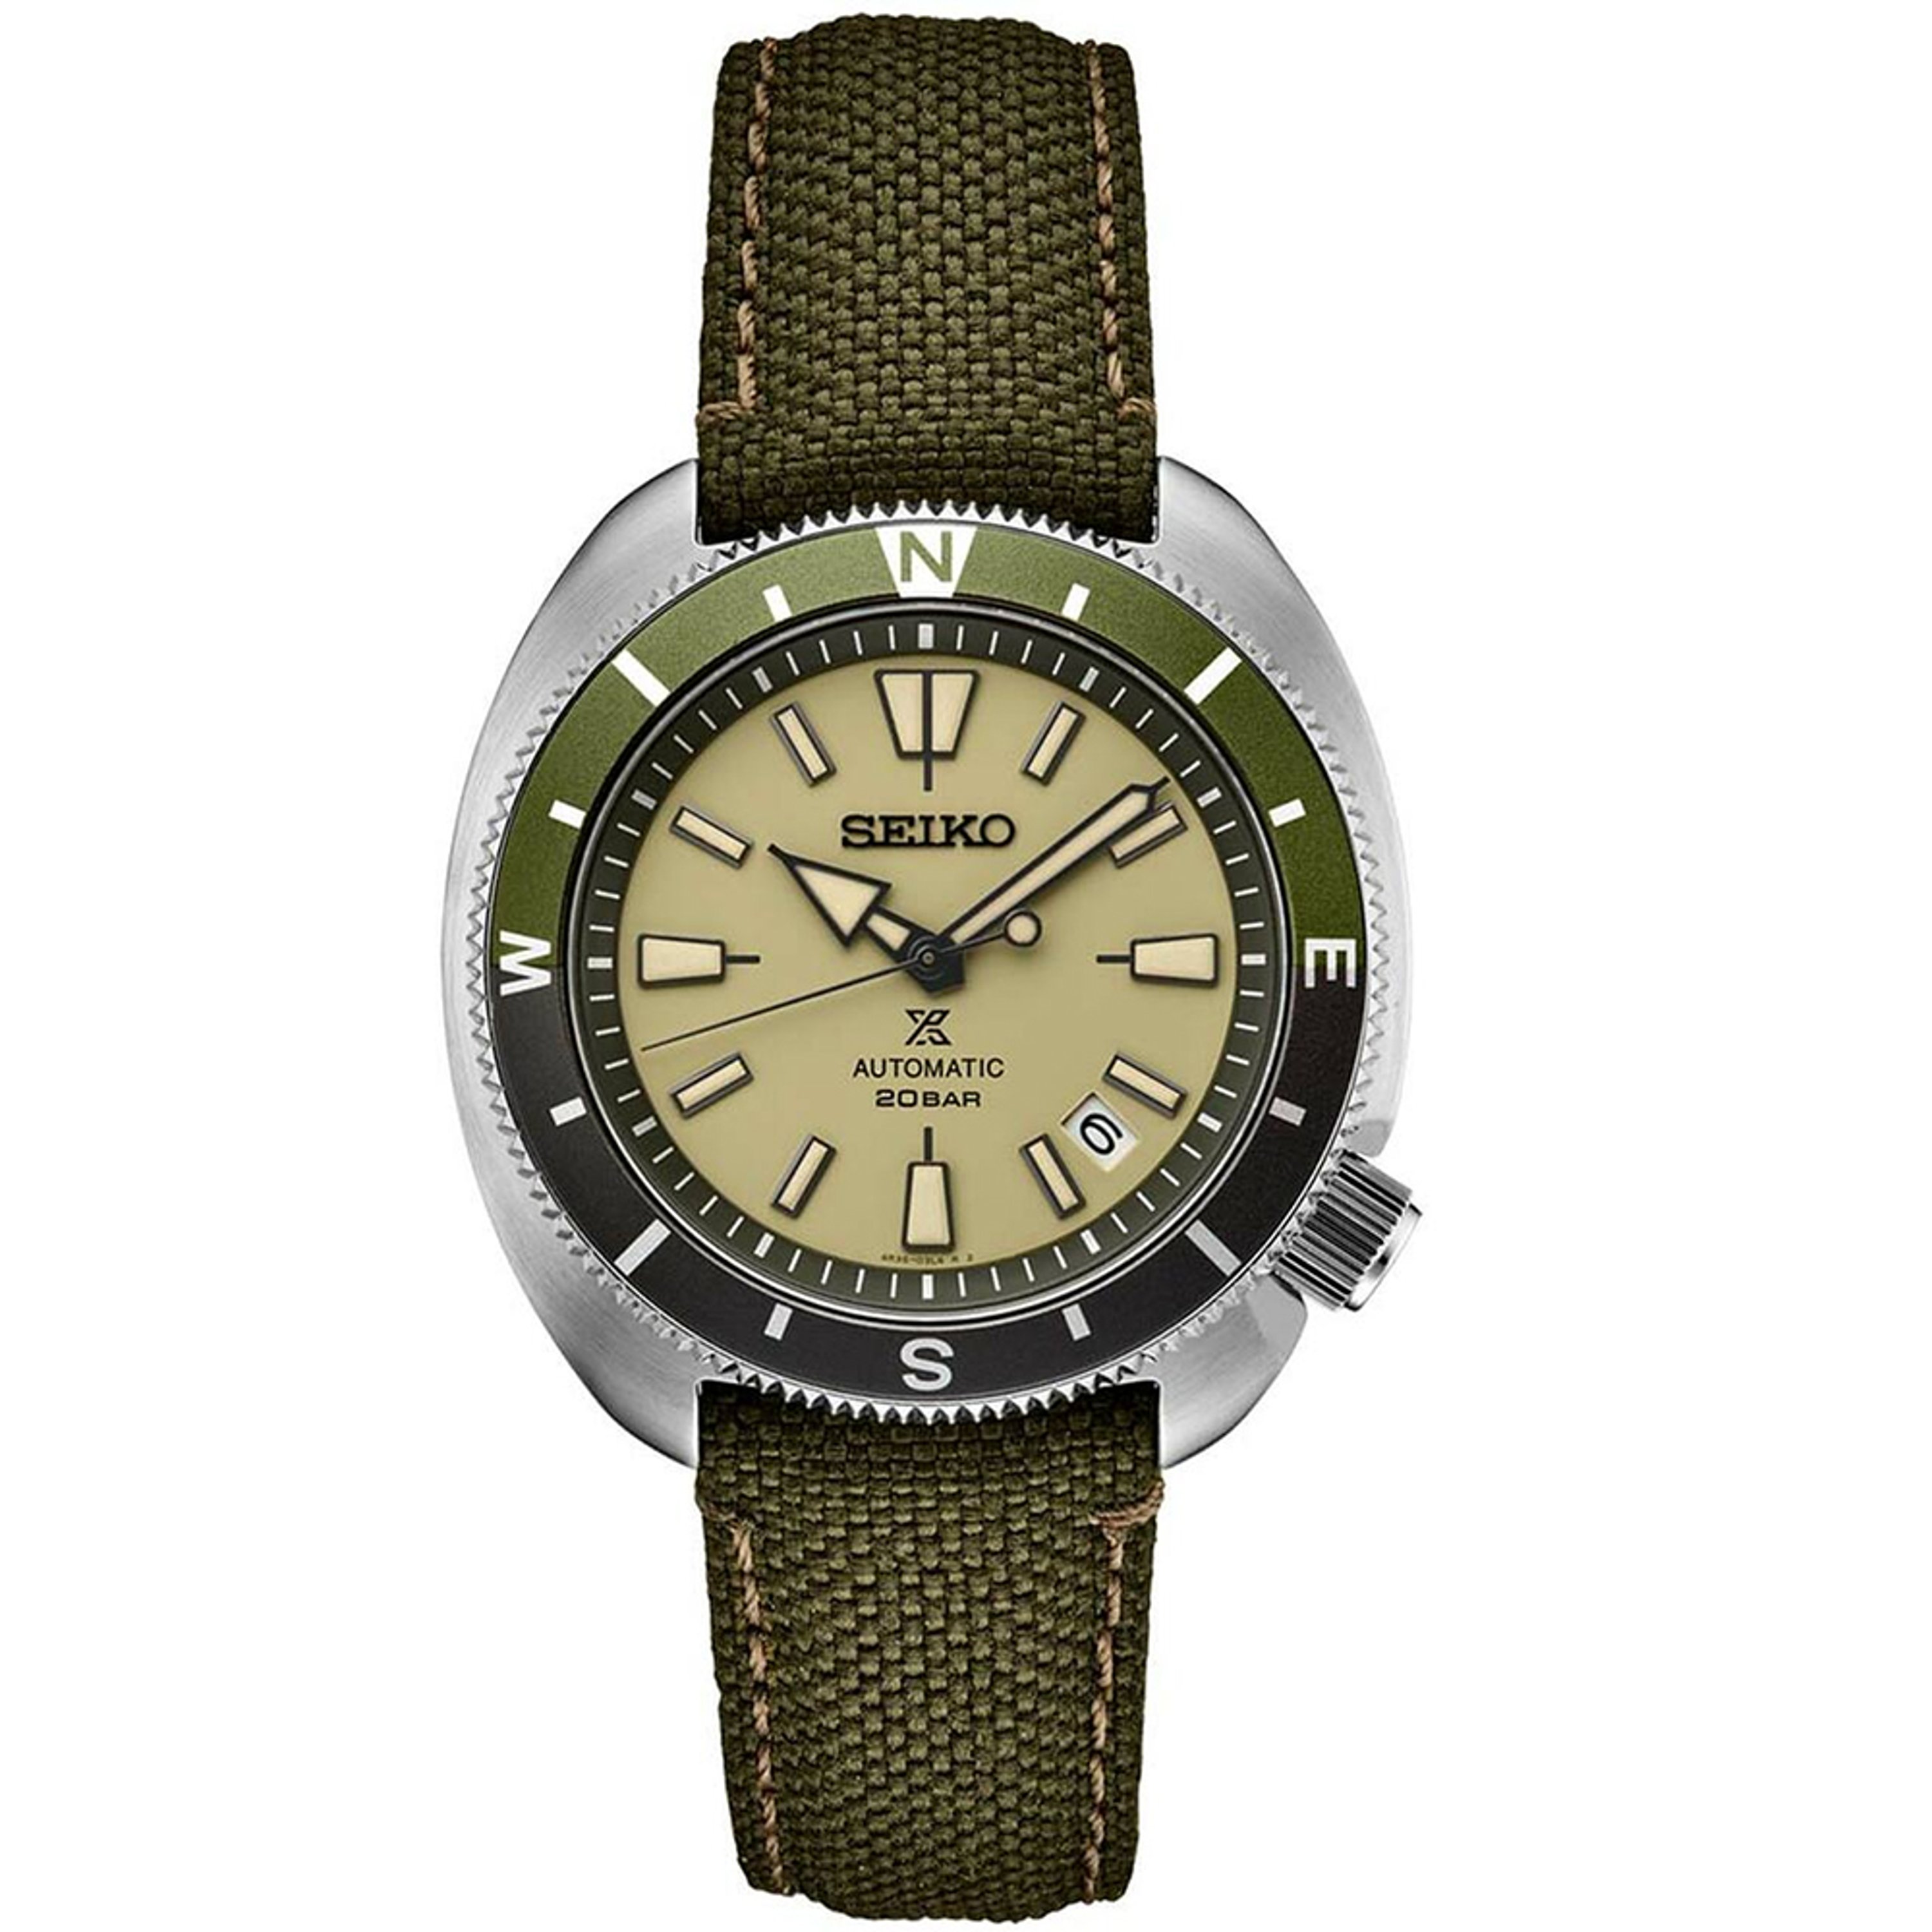 Seiko Men's Automatic Prospex Green Nylon Strap Watch 42mm In Cream